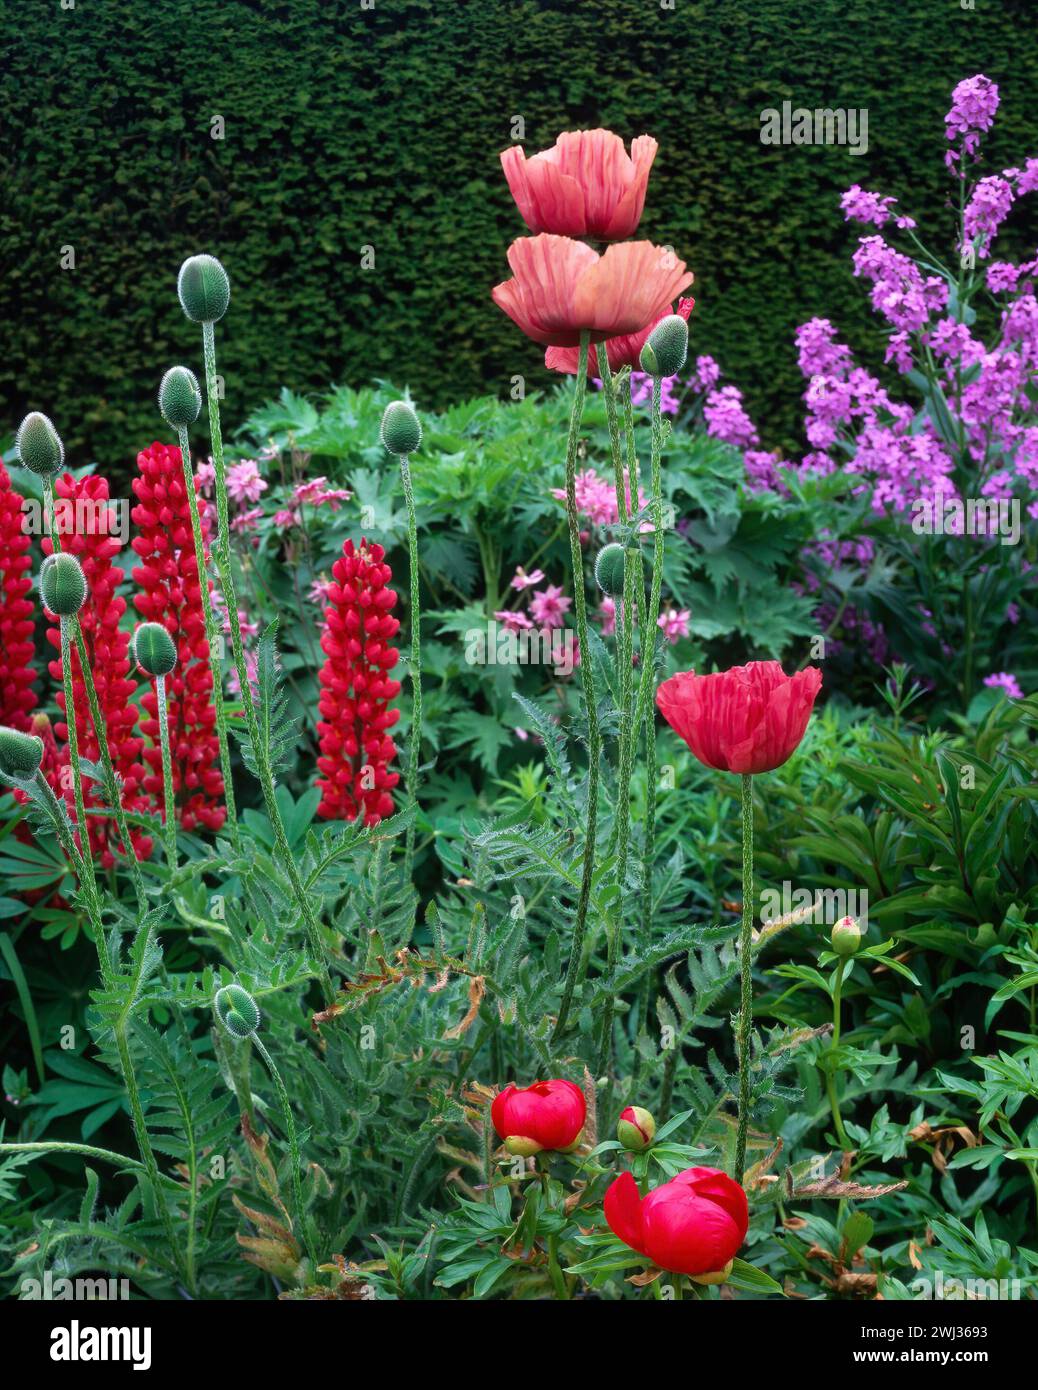 Bordure herbacée mixte avec des fleurs de pavot oriental et de lupin poussant dans le jardin anglais, Angleterre, Royaume-Uni Banque D'Images